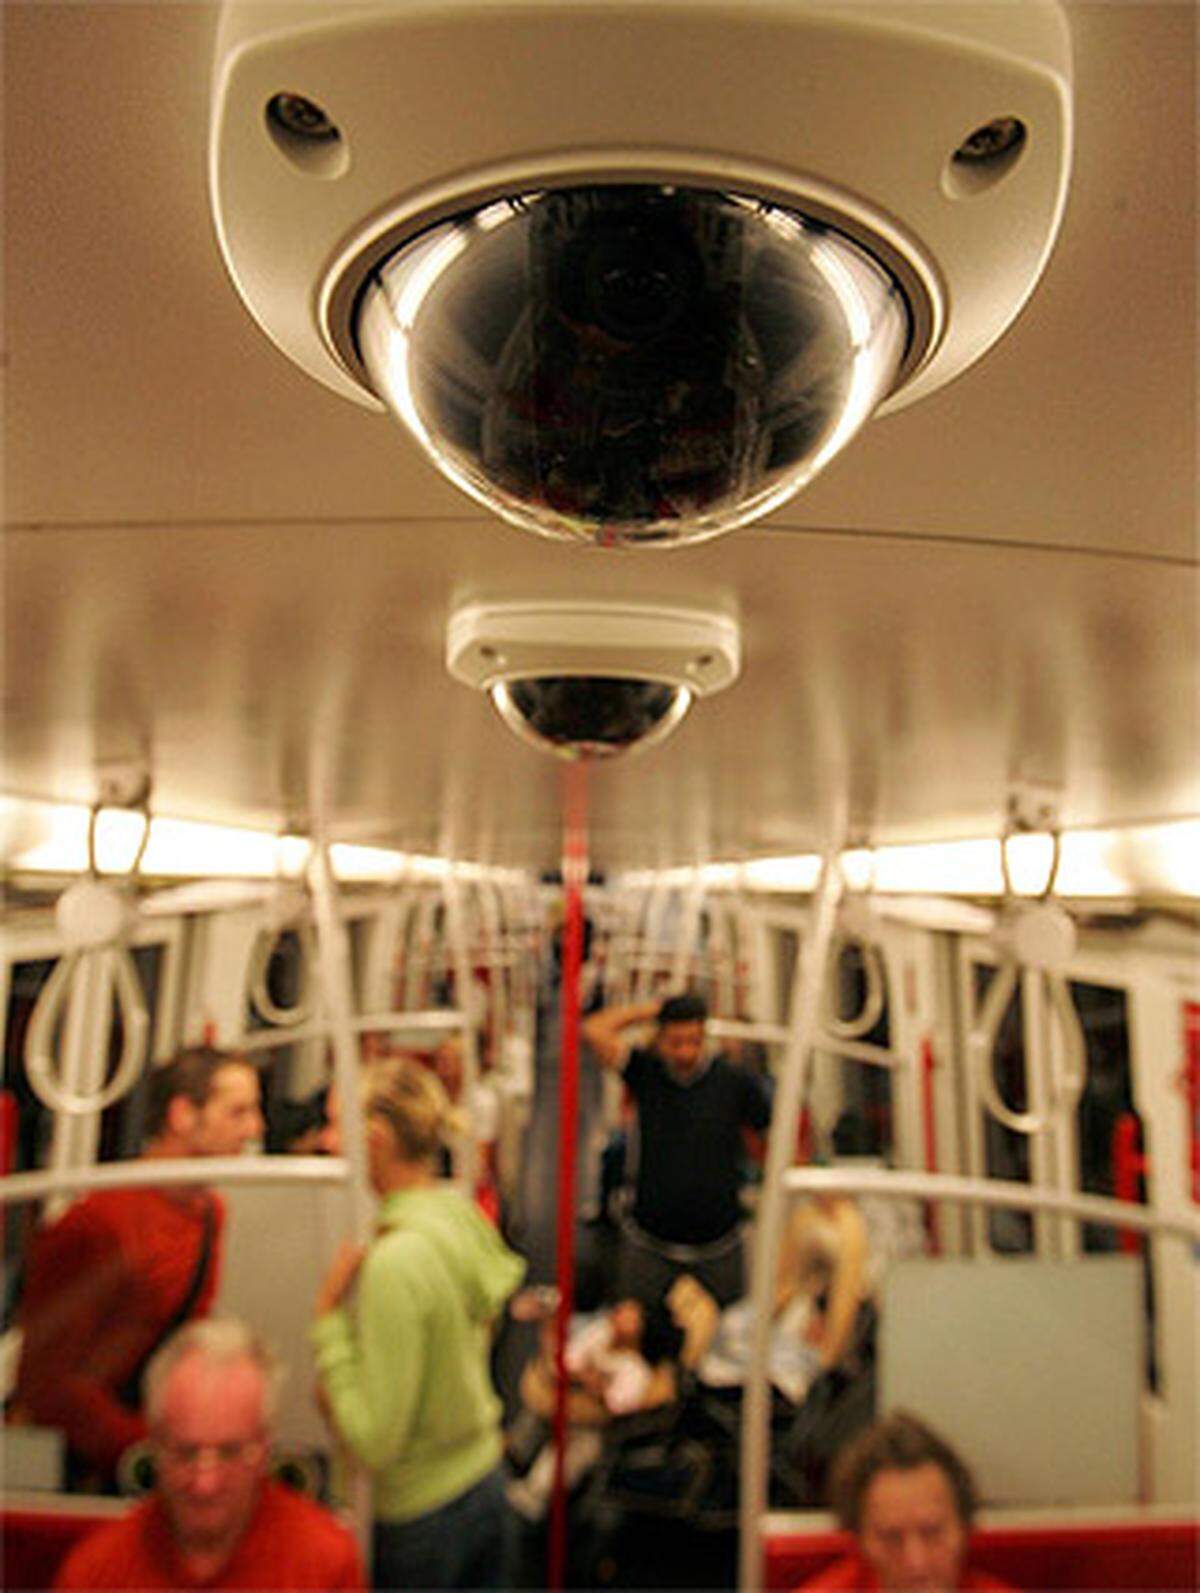 Die Wiener Linien wurden ebenfalls für ihre Bemühungen in Sachen Videoüberwachung  ausgewählt. Besonders pikant: Der Überwachte - also der Fahrgast - wird in Form von Fahrpreiserhöhungen für das Service zur Kasse gebeten.